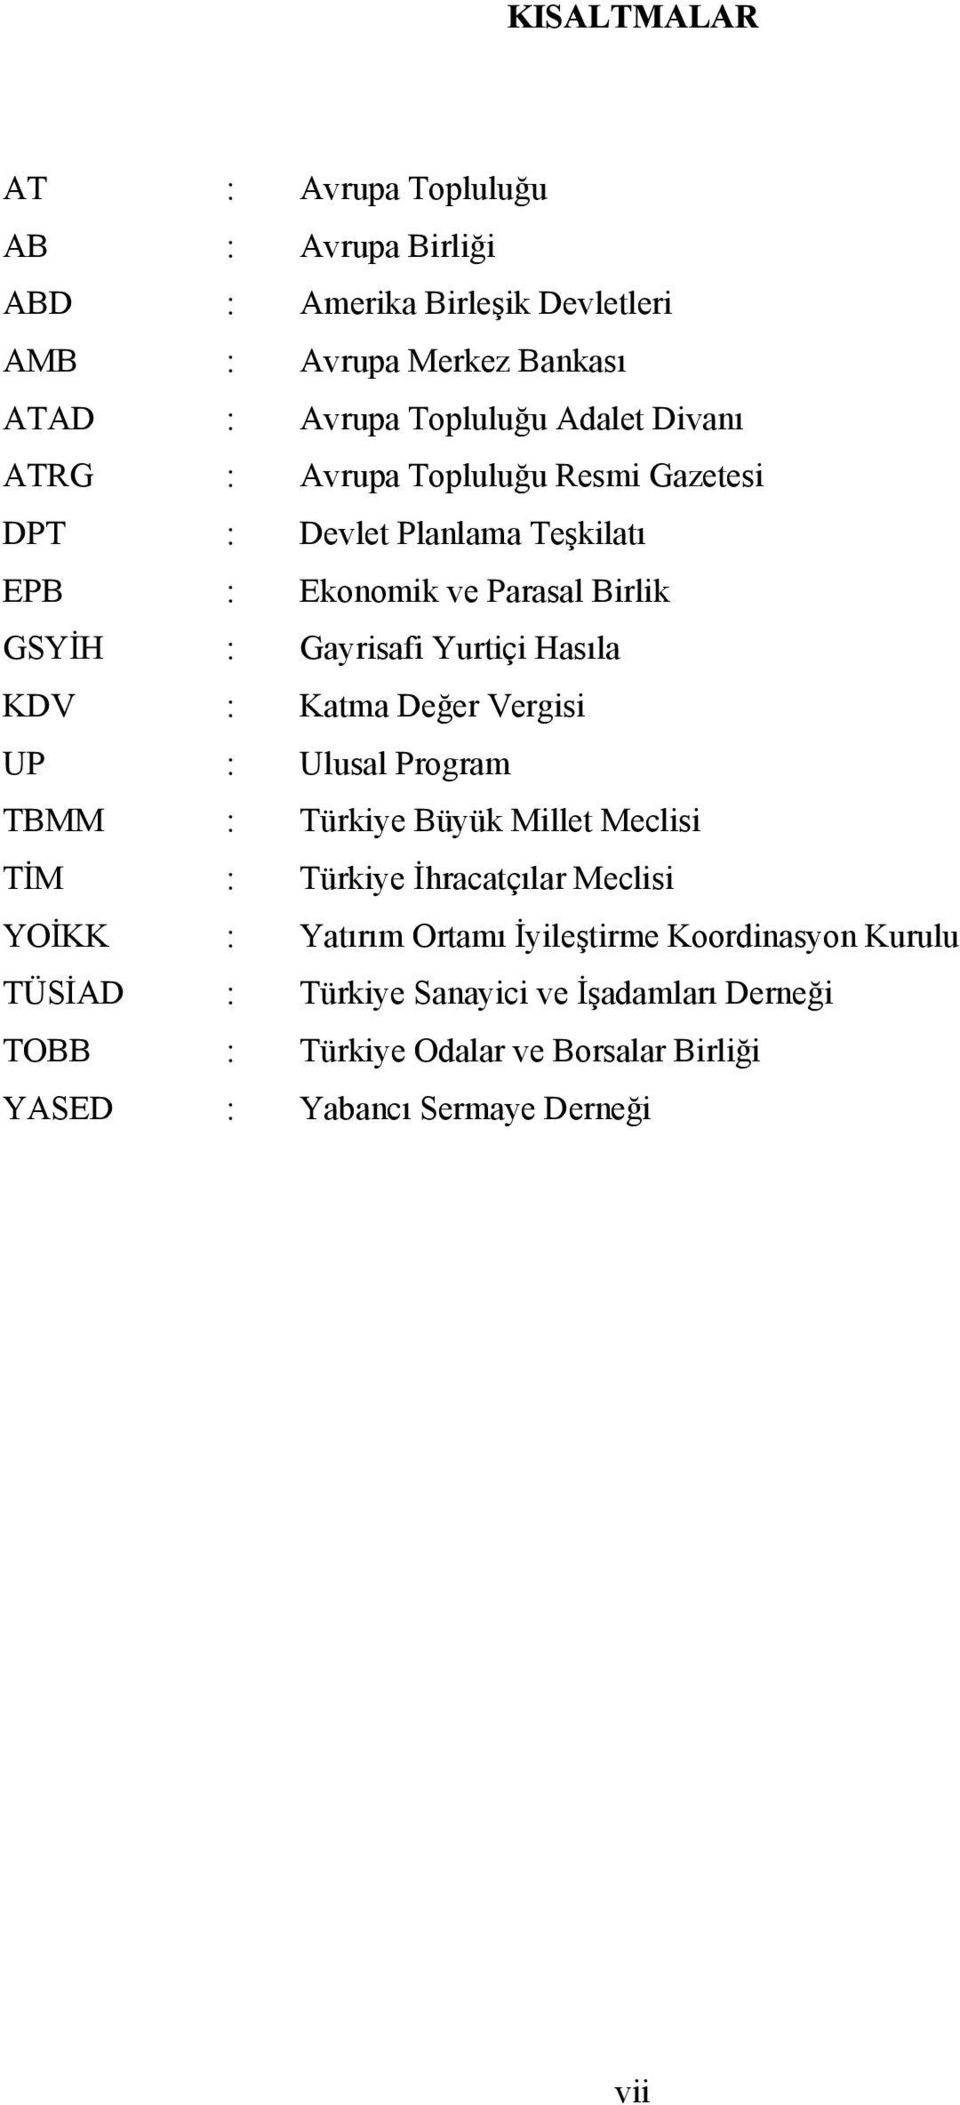 KDV : Katma Değer Vergisi UP : Ulusal Program TBMM : Türkiye Büyük Millet Meclisi TİM : Türkiye İhracatçılar Meclisi YOİKK : Yatırım Ortamı